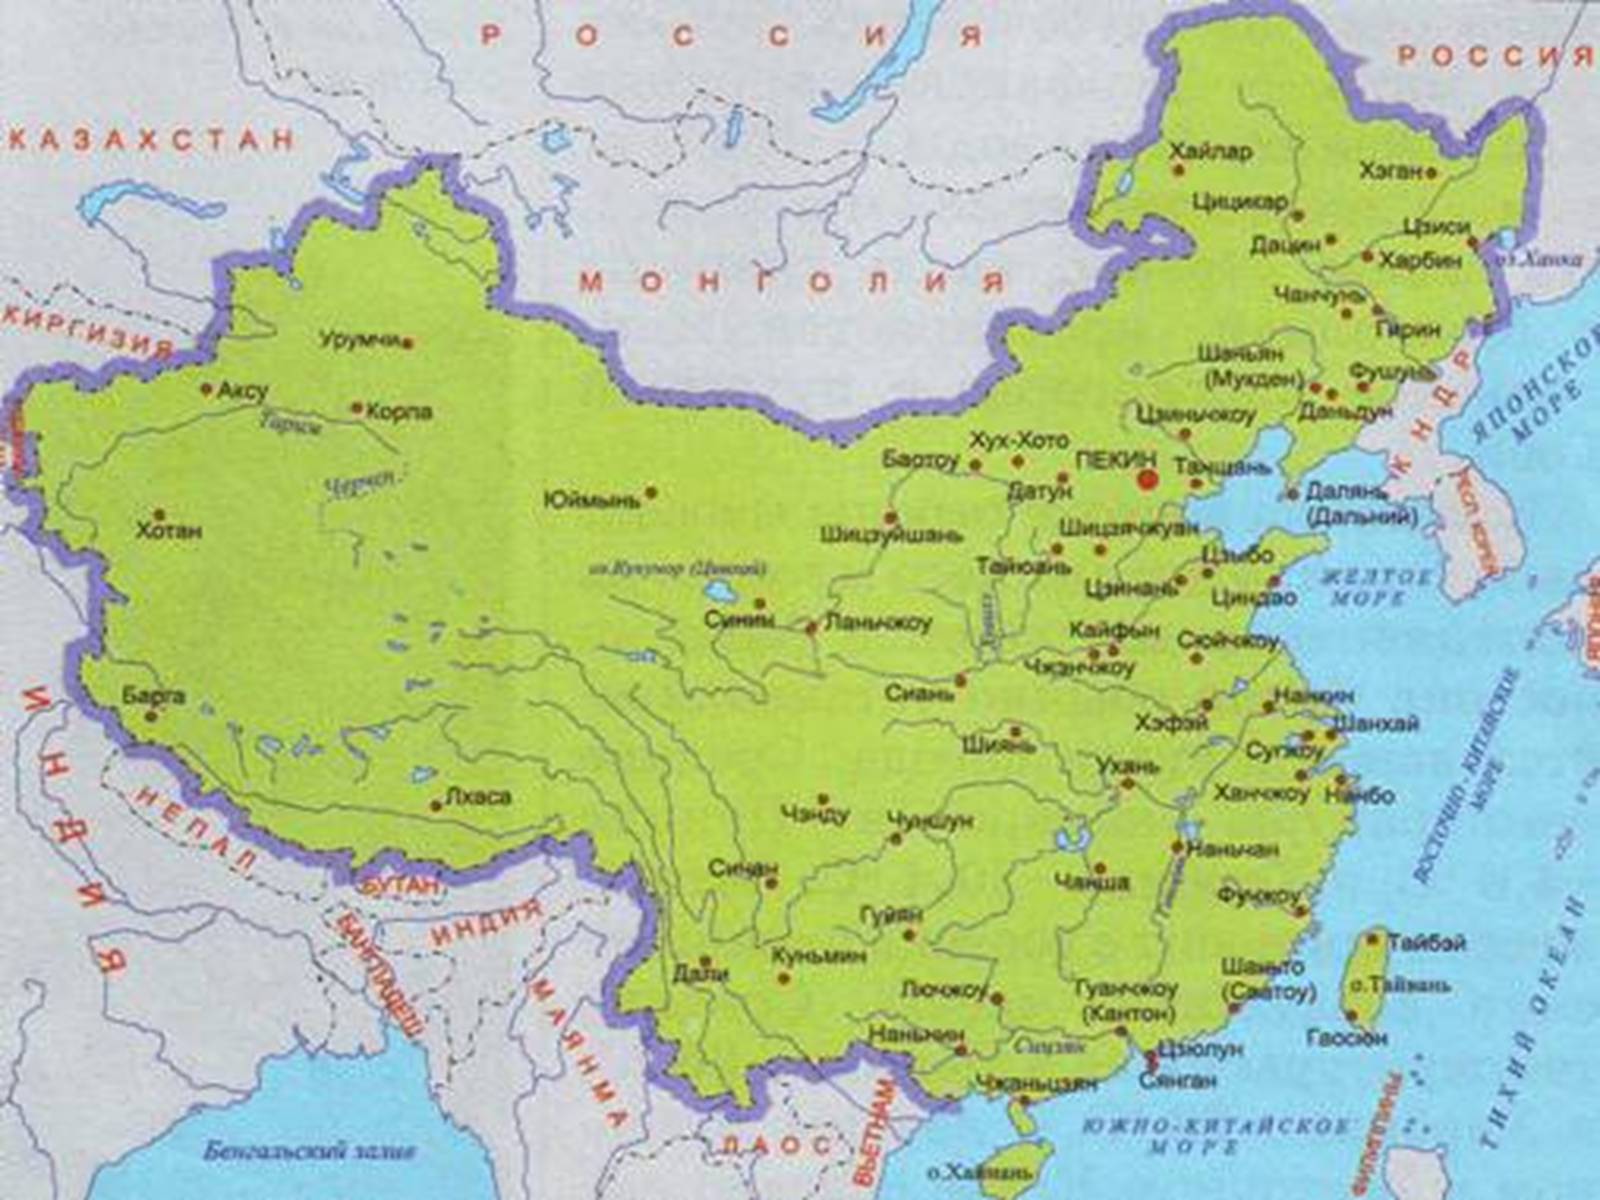 На каком материке находится великая китайская. Великая китайская равнина границы на карте. Великая равнина Китая на карте. Великая киьайская Ровнина на карте. На карте Великая китайская равнина на карте.